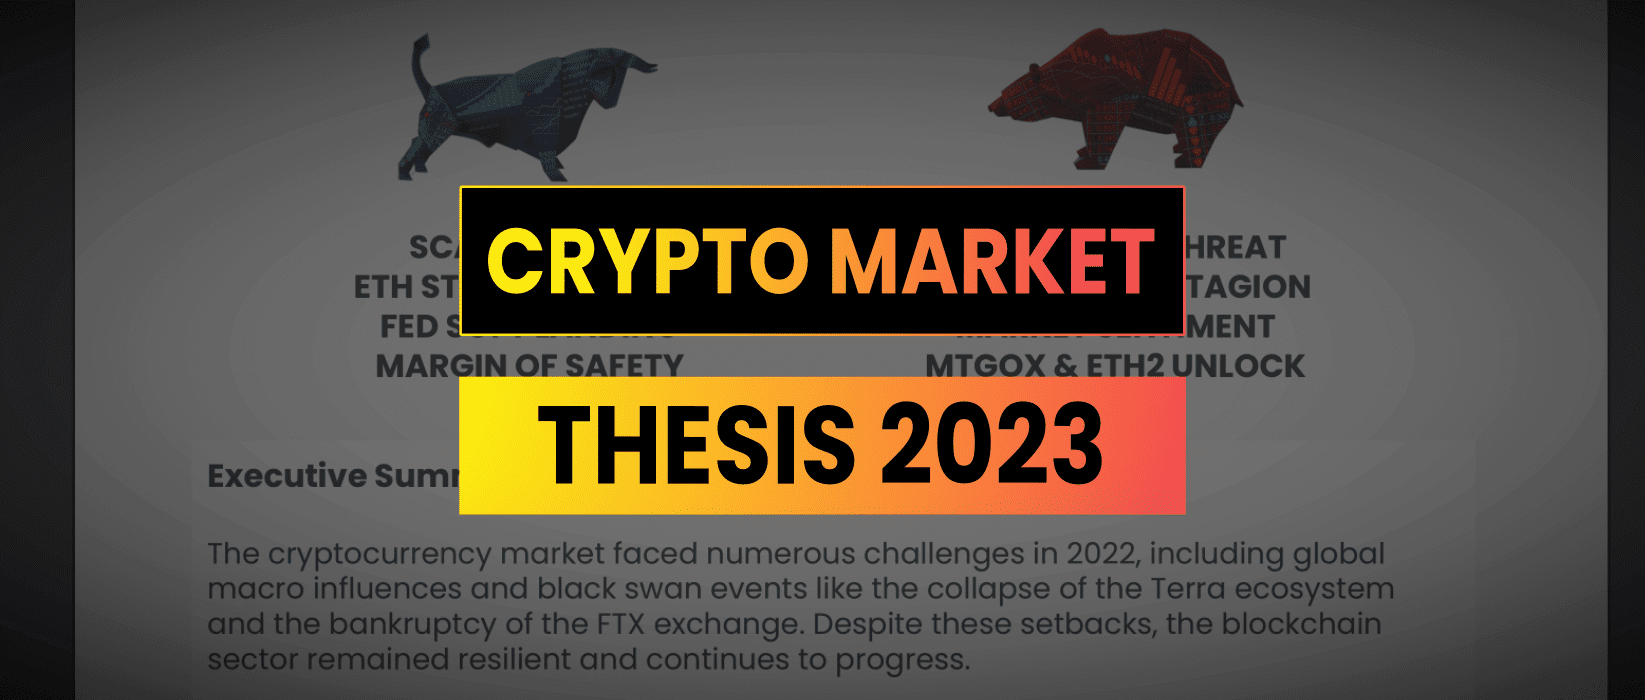 Crypto Market Thesis 2023